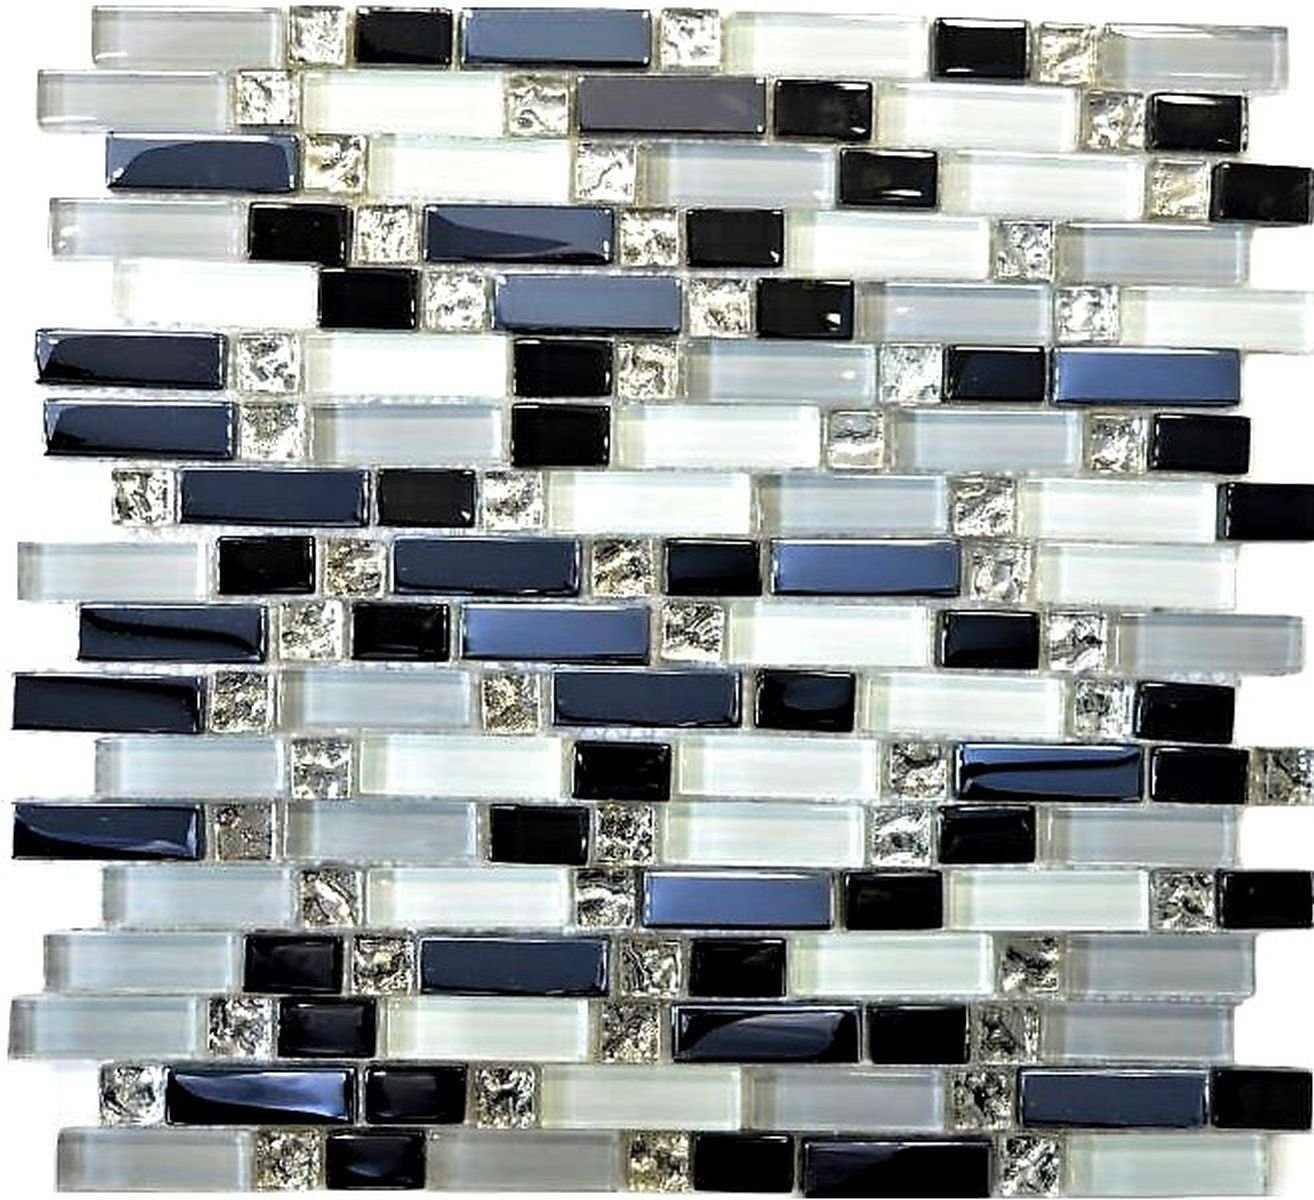 Mosani Mosaikfliesen Glasmosaik Stäbchen Mosaikfliesen weiss grau schwarz grafit